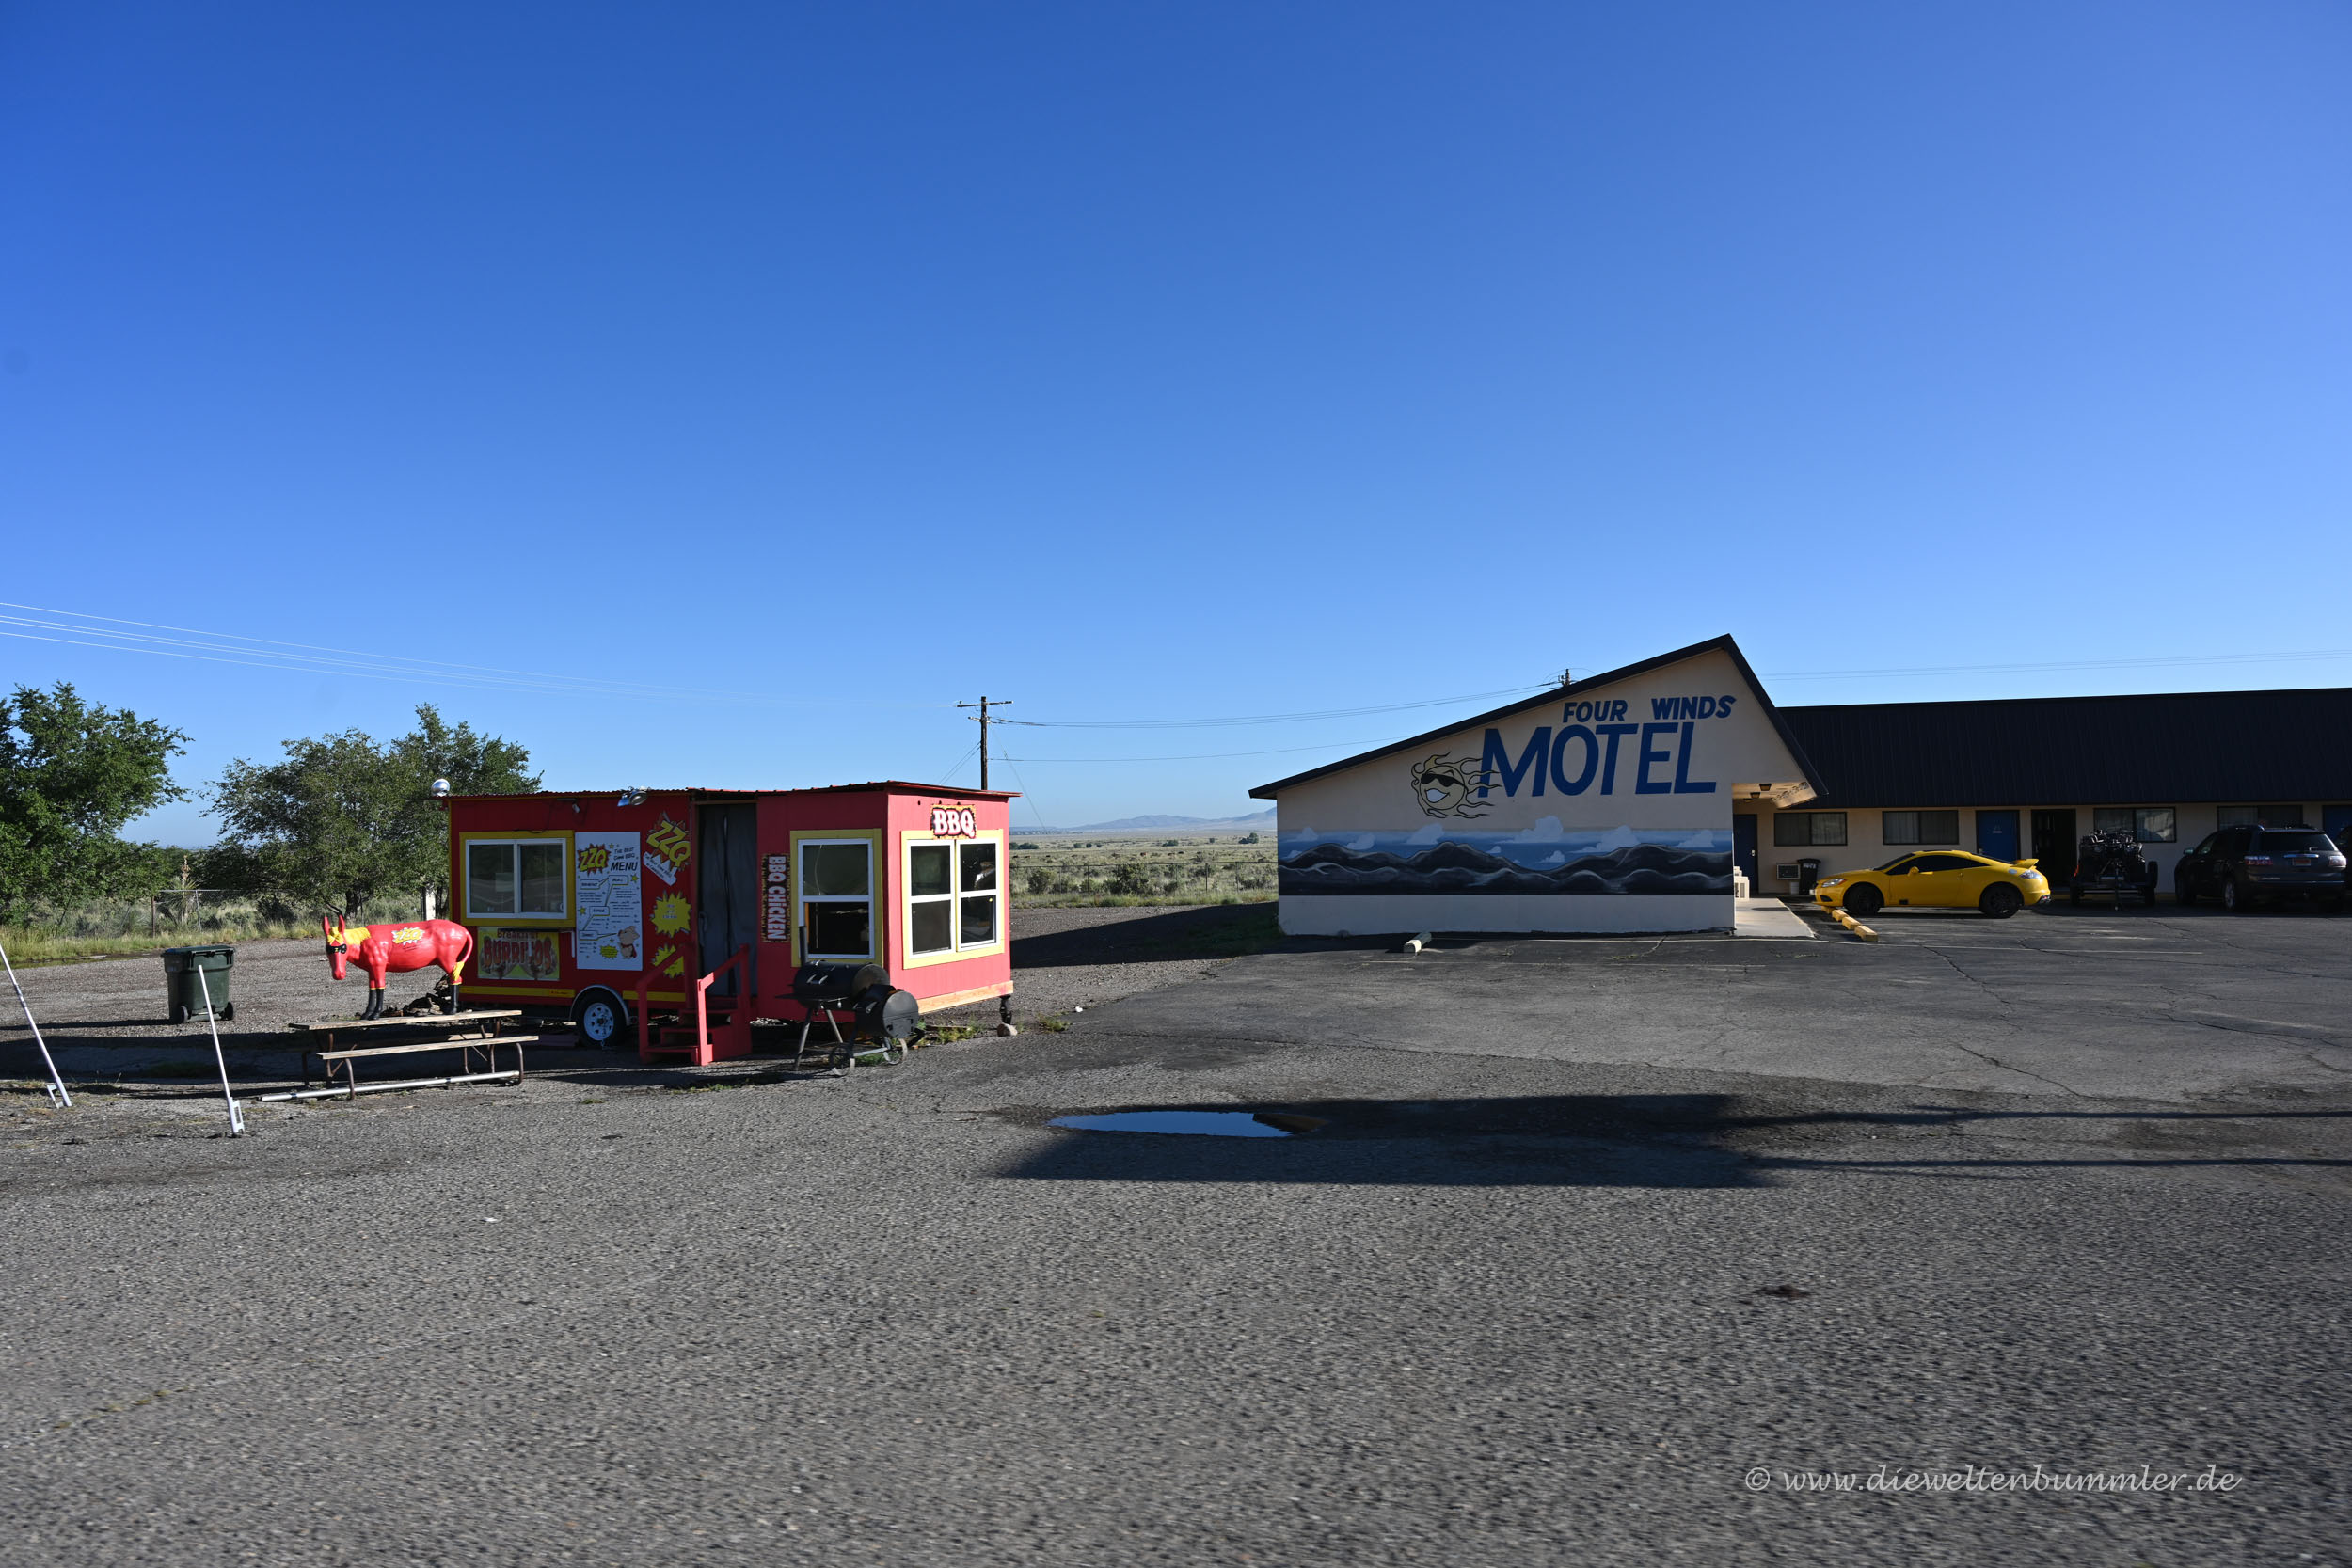 Irgendein Motel in der Wüste